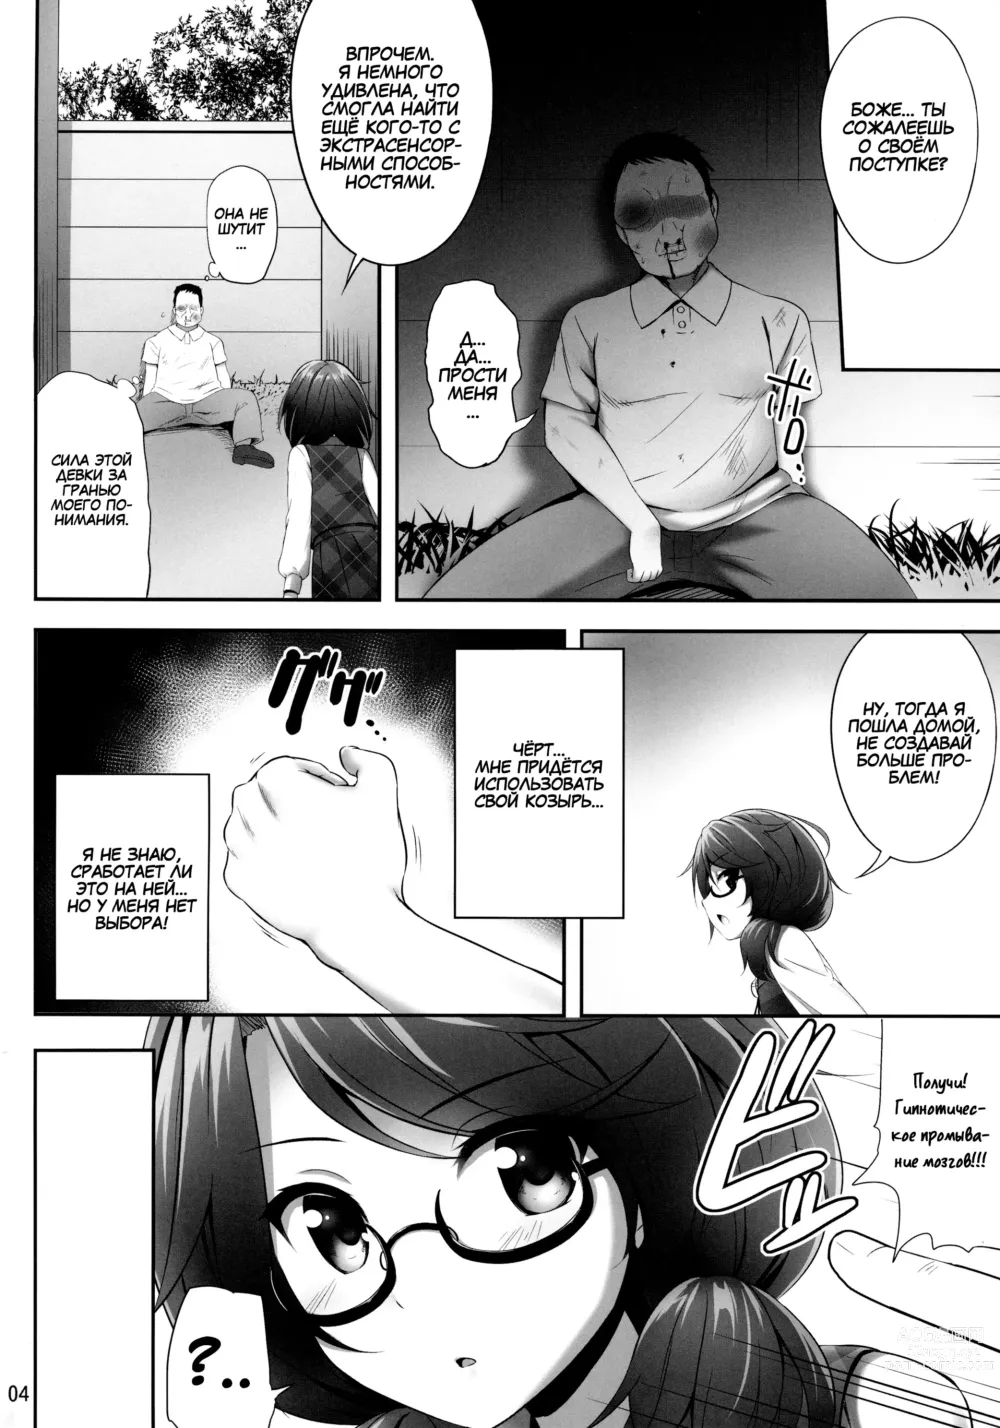 Page 3 of doujinshi Usami Sumireko Saiminbon